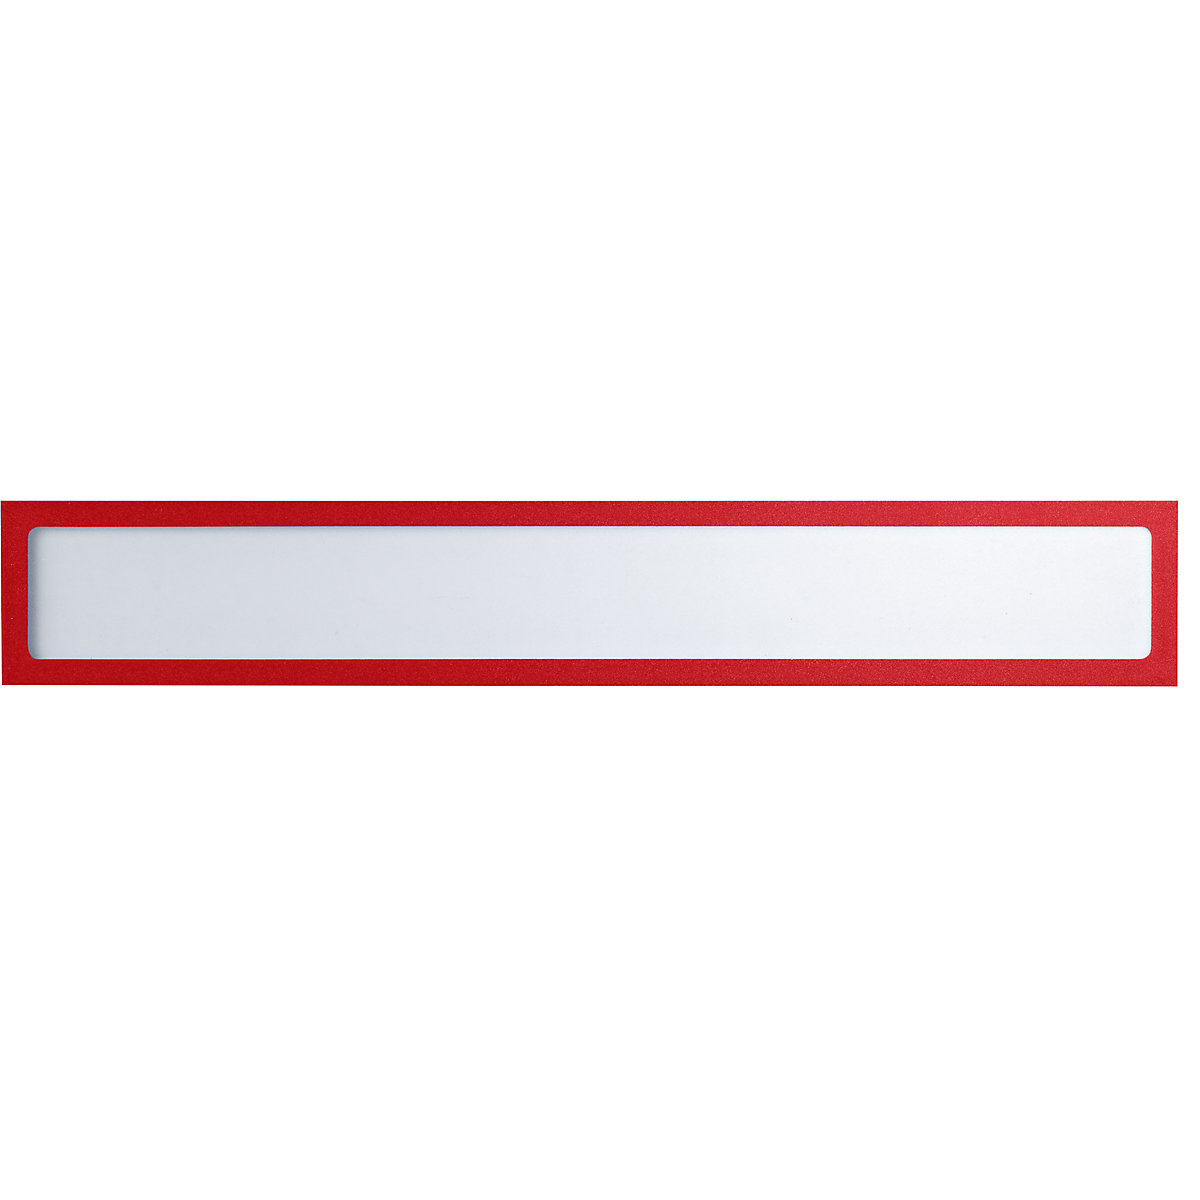 Busta portastampati magnetica – eurokraft basic, per elementi di testo, UNI A3 in orizzontale / UNI A2 in verticale, 435 x 60 mm, telaio rosso, conf. 10 pz.-5